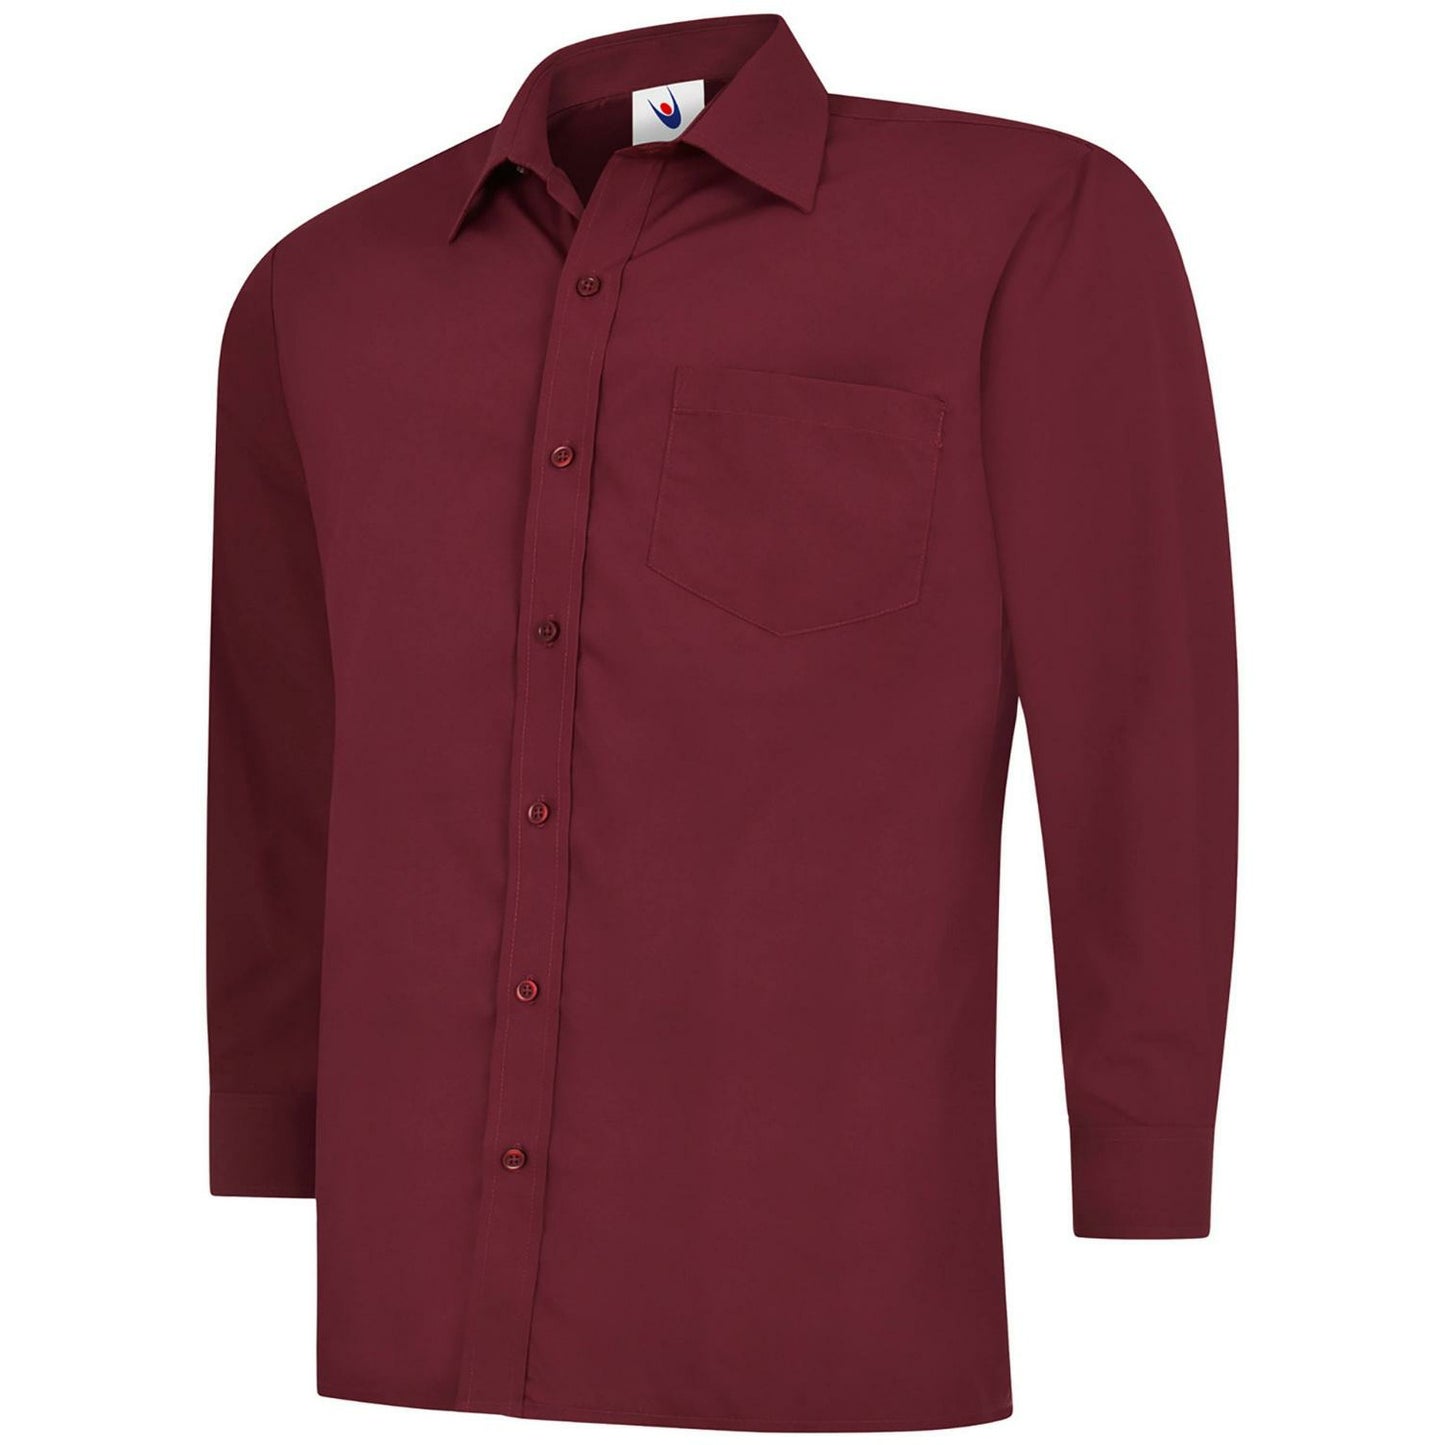 Mens Poplin Full Sleeve Shirt (17 - 19.5) - Burgundy